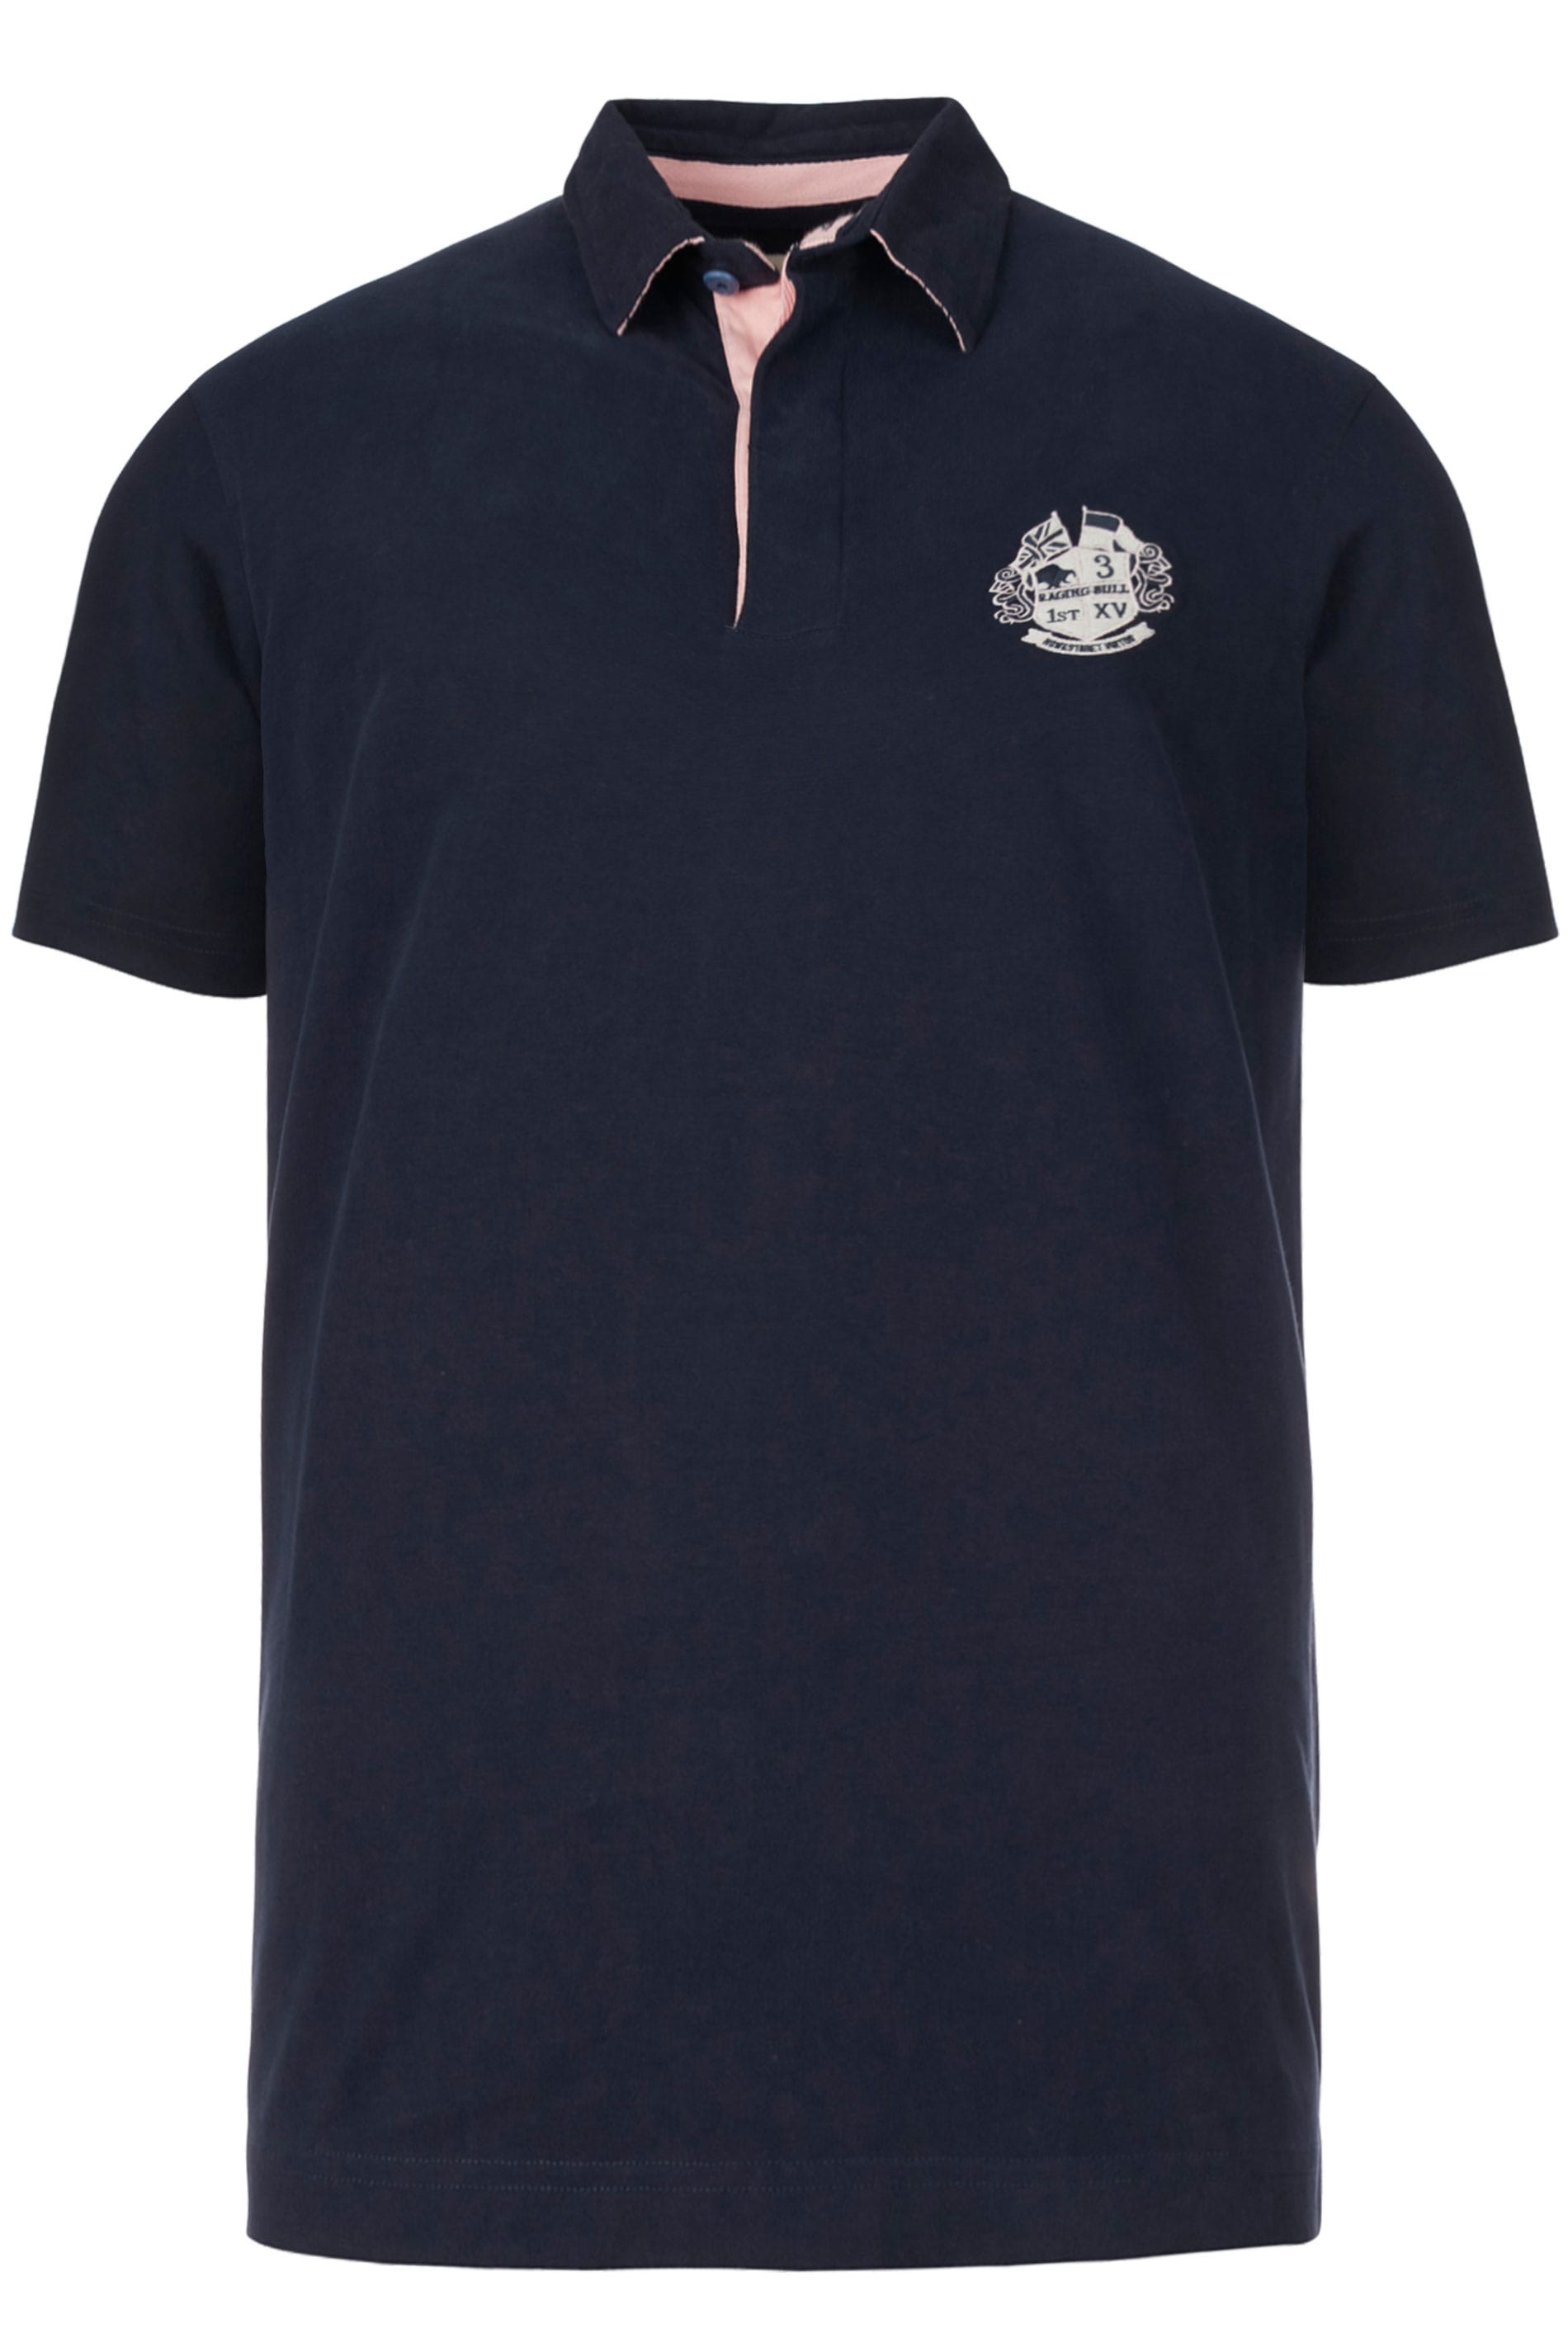 RAGING BULL Navy Signature Rugby Polo Shirt | BadRhino